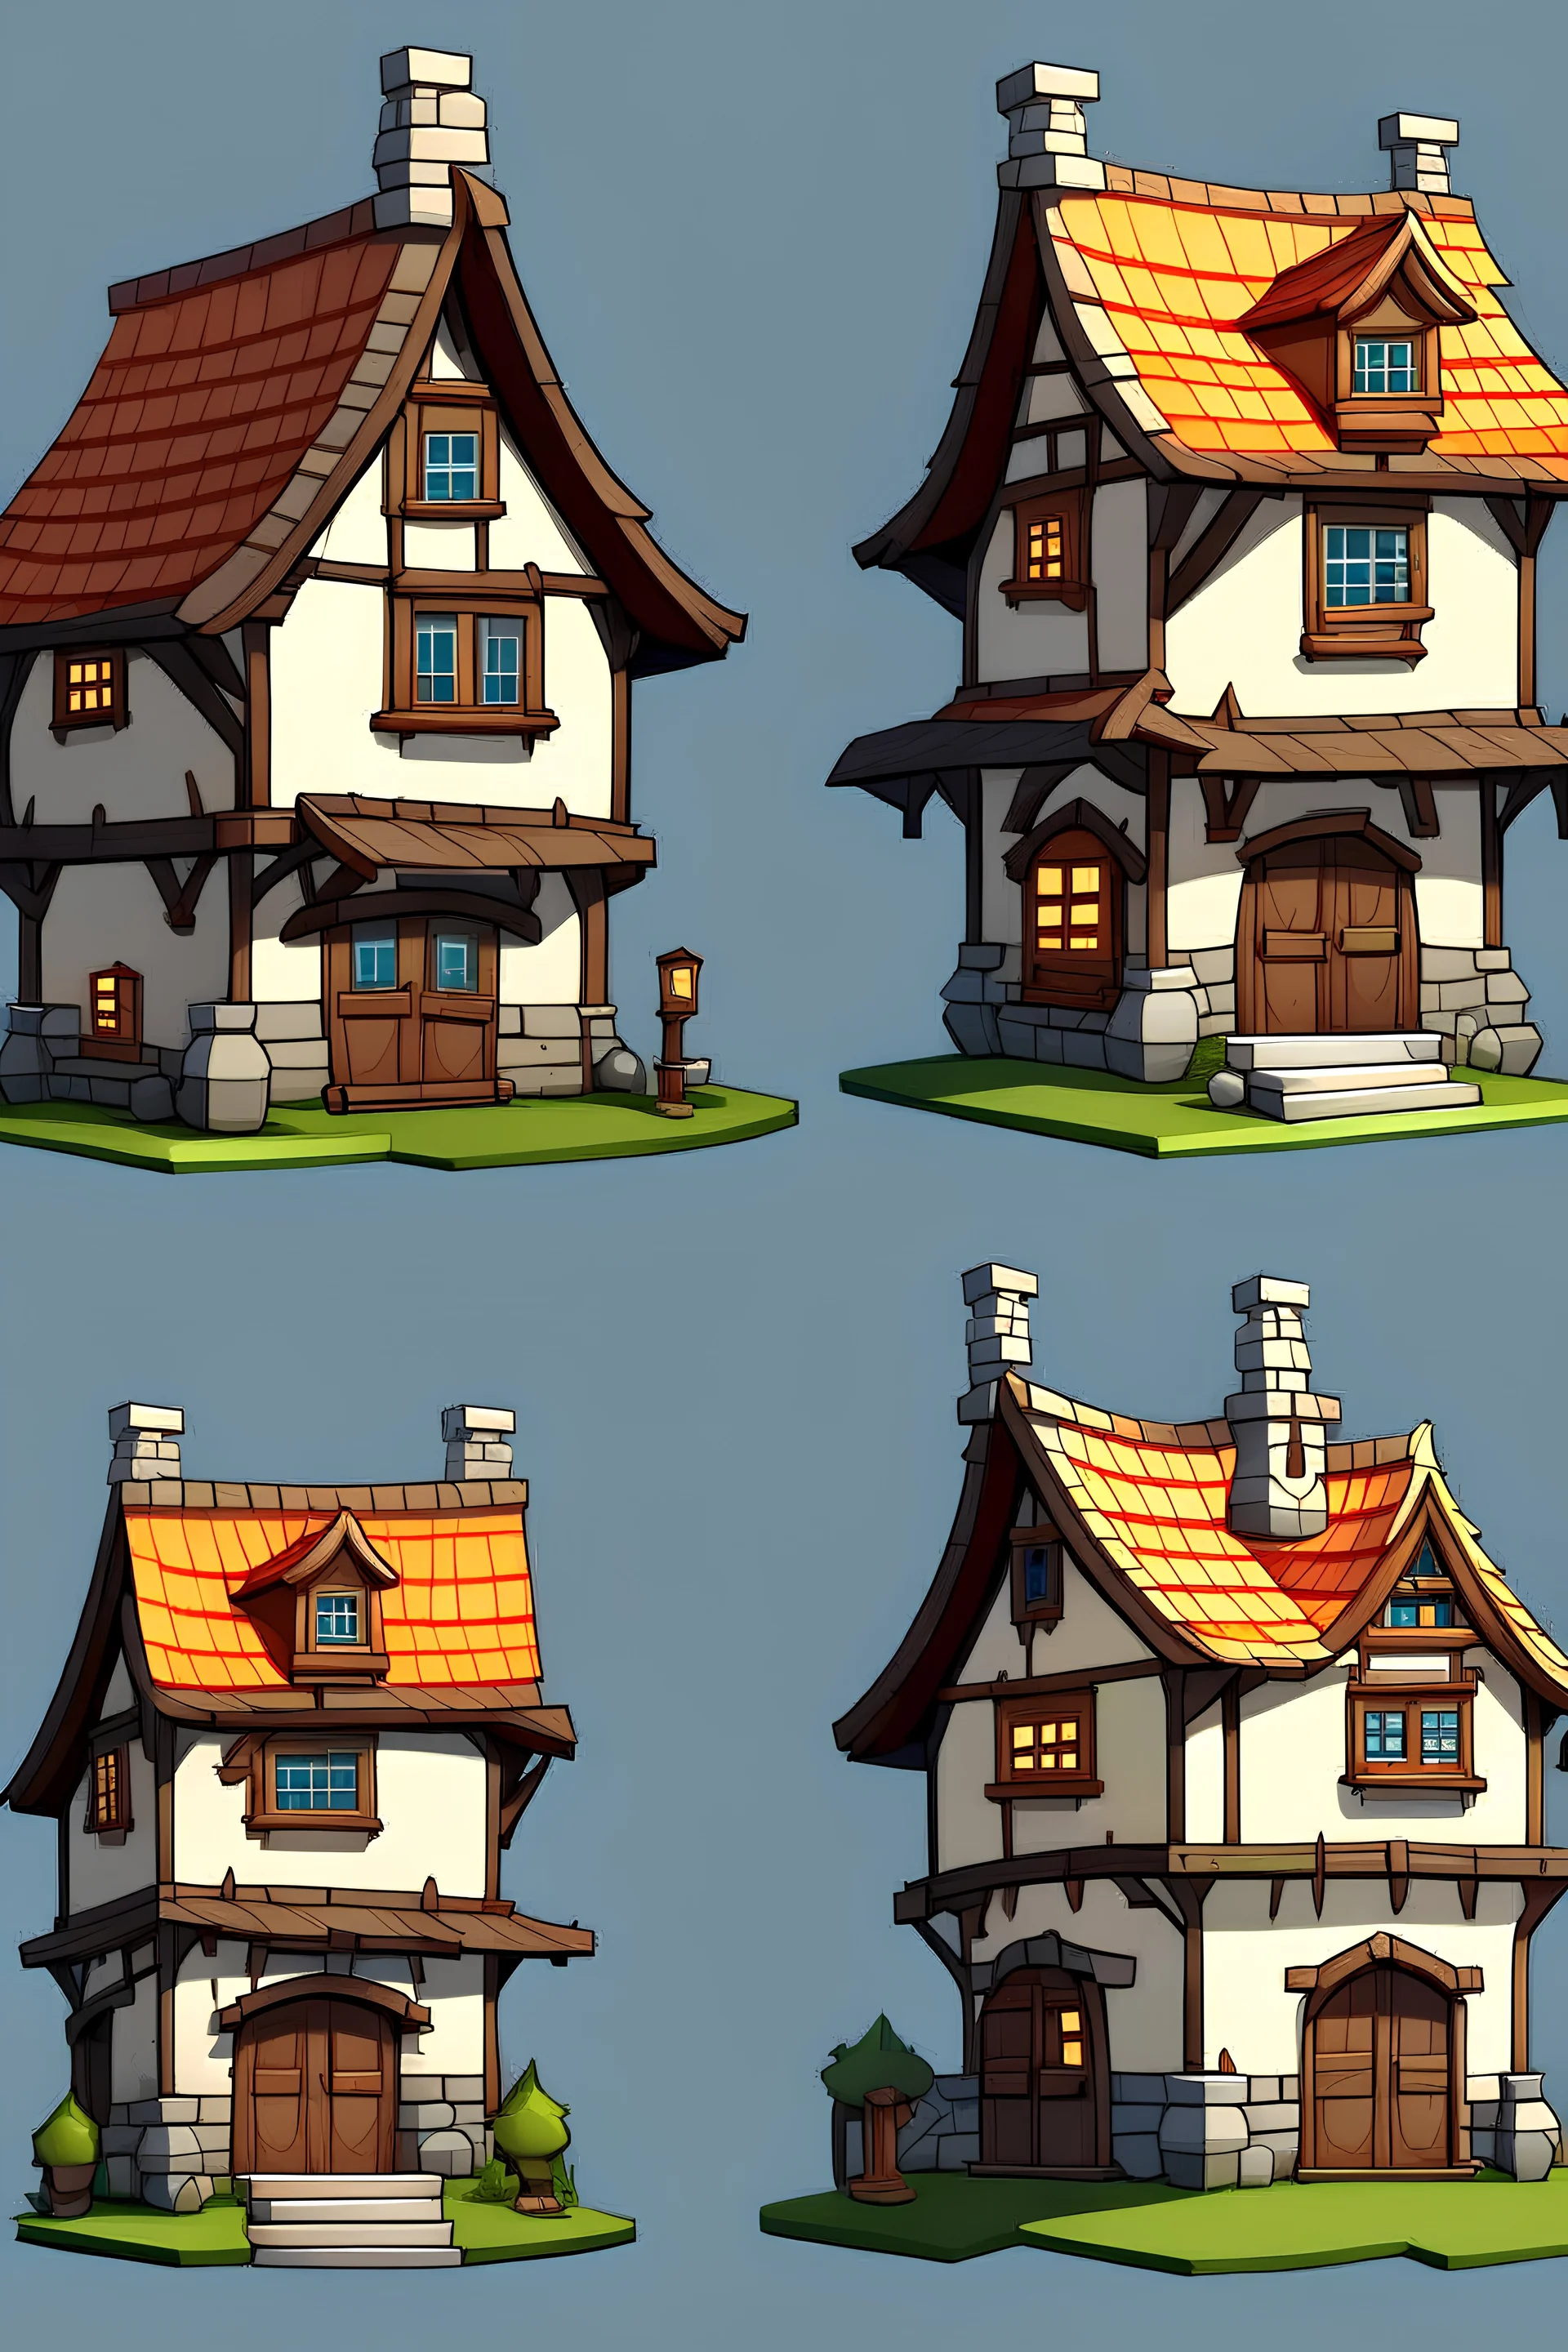 2D game medival house